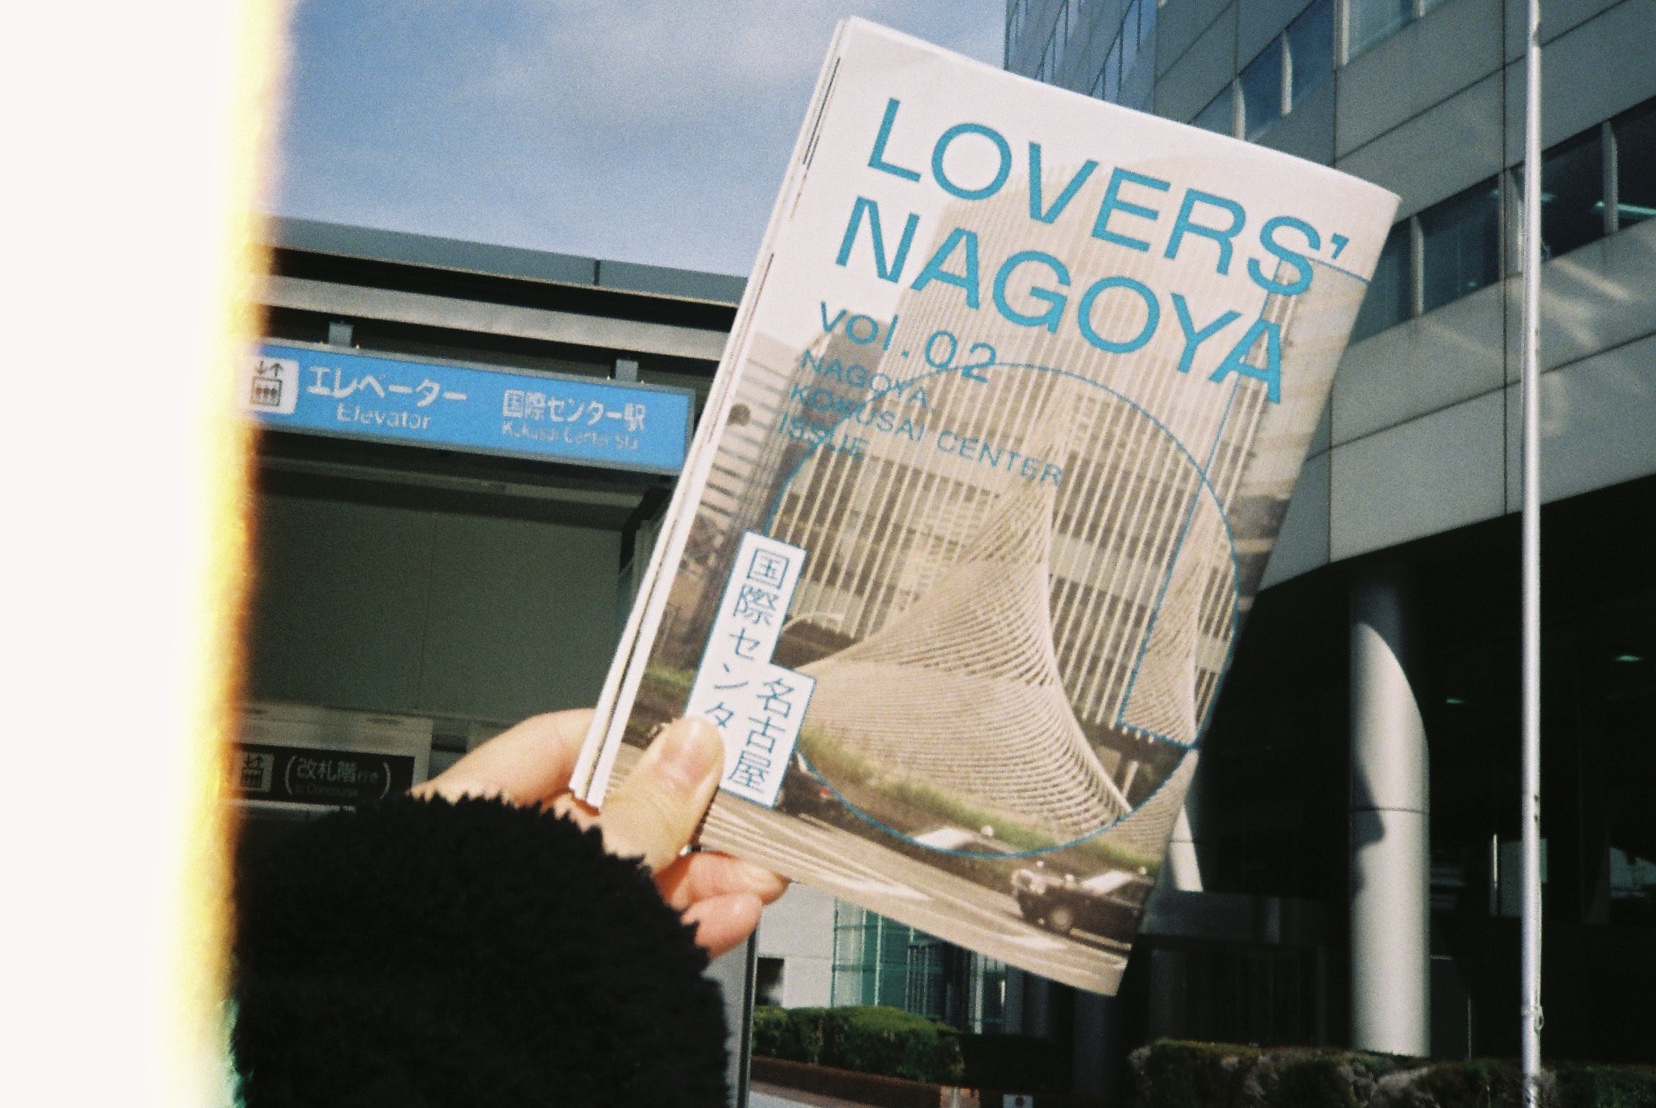 【フィルムカメラを片手に】「LOVERS NAGOYA vol.02」を片手に（Autoboy2 編）